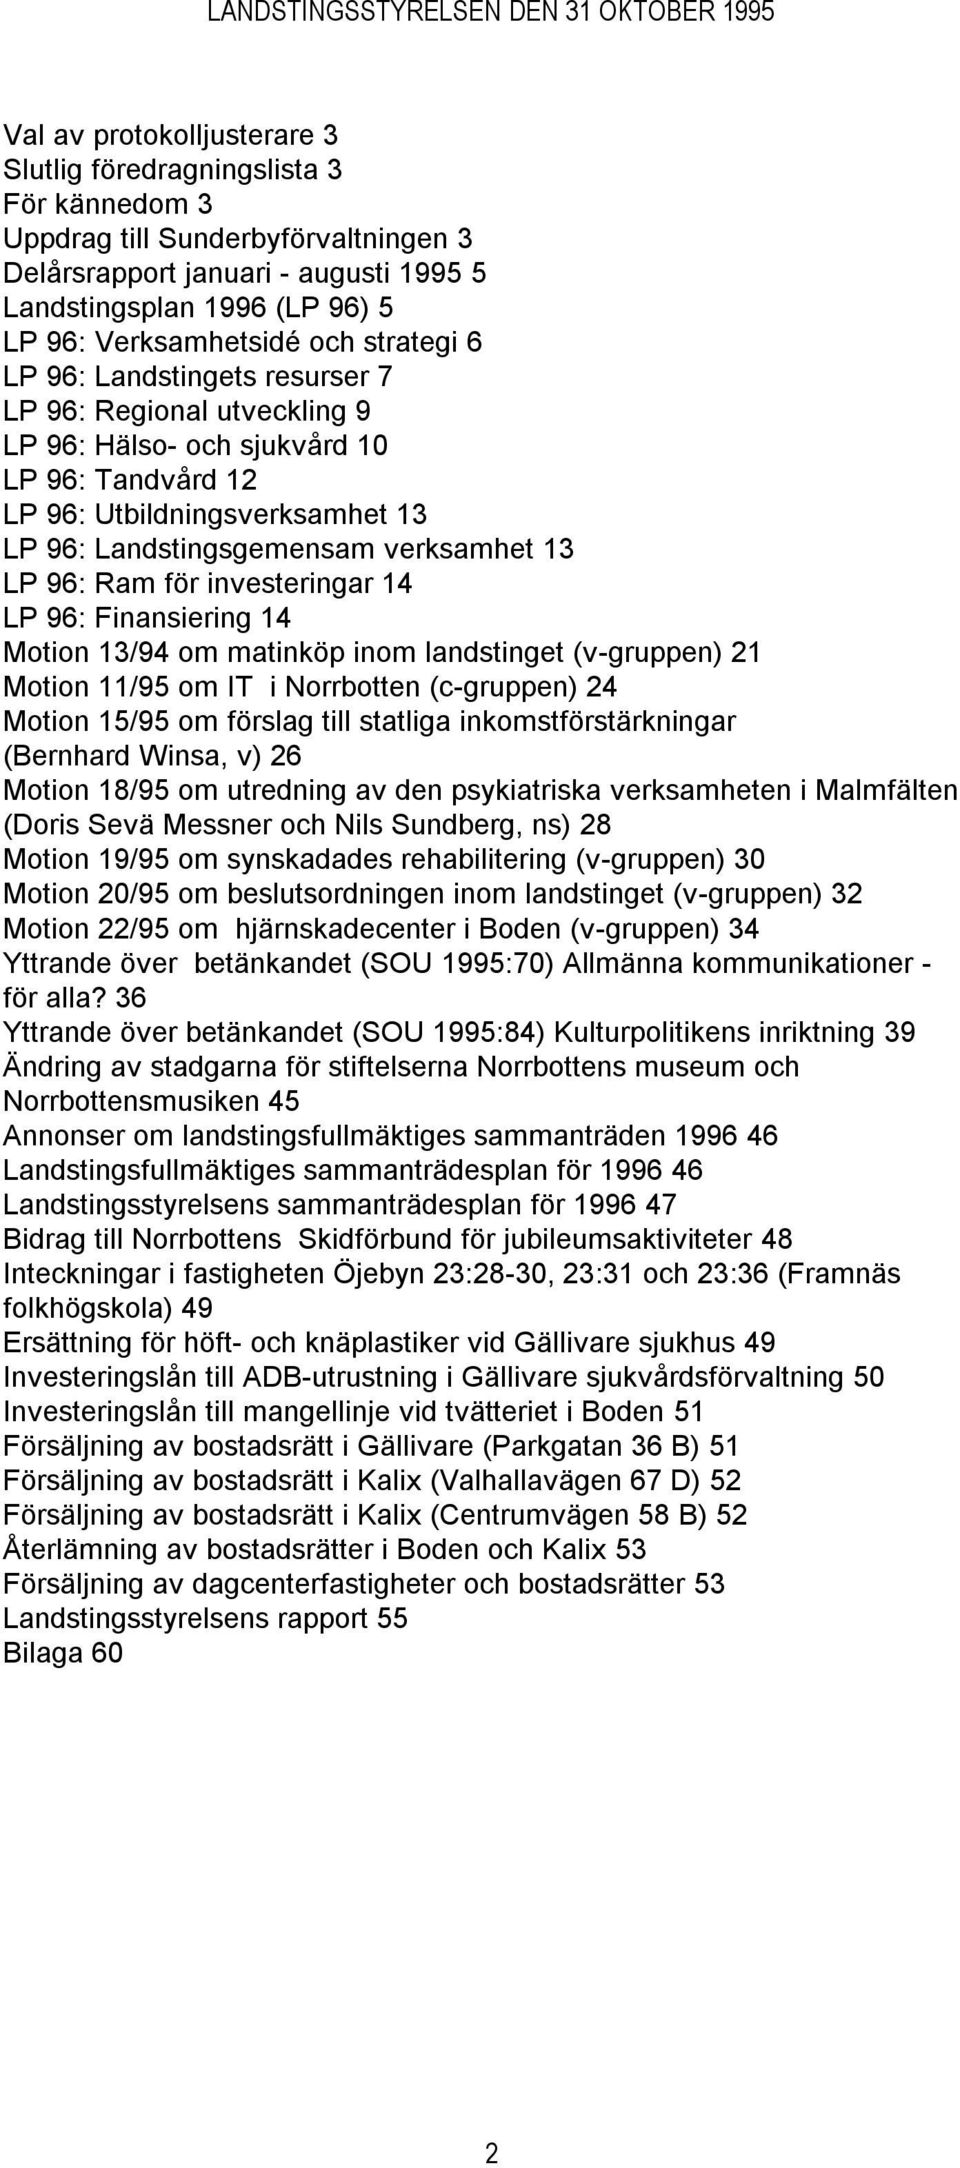 96: Ram för investeringar 14 LP 96: Finansiering 14 Motion 13/94 om matinköp inom landstinget (v-gruppen) 21 Motion 11/95 om IT i Norrbotten (c-gruppen) 24 Motion 15/95 om förslag till statliga